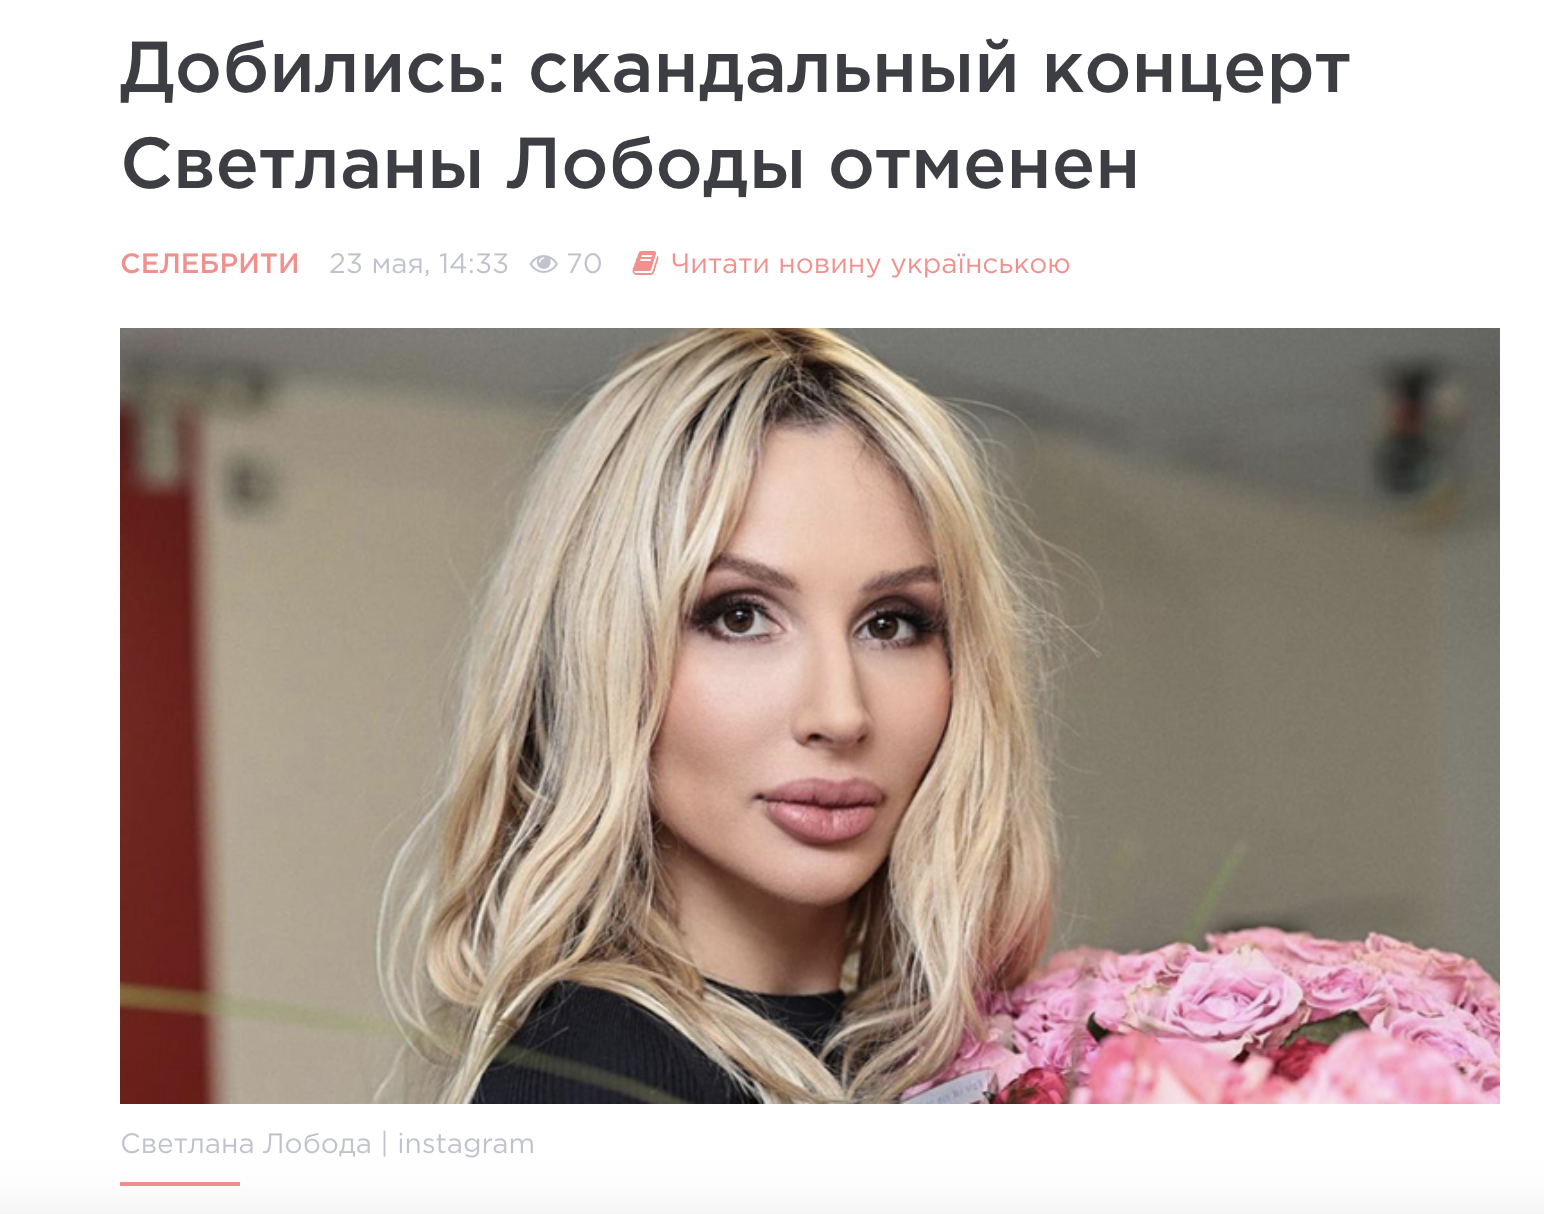 Так отреагировали украинские медиа на отказ Лободы от своего концерта в Киеве. Скрин © lux 